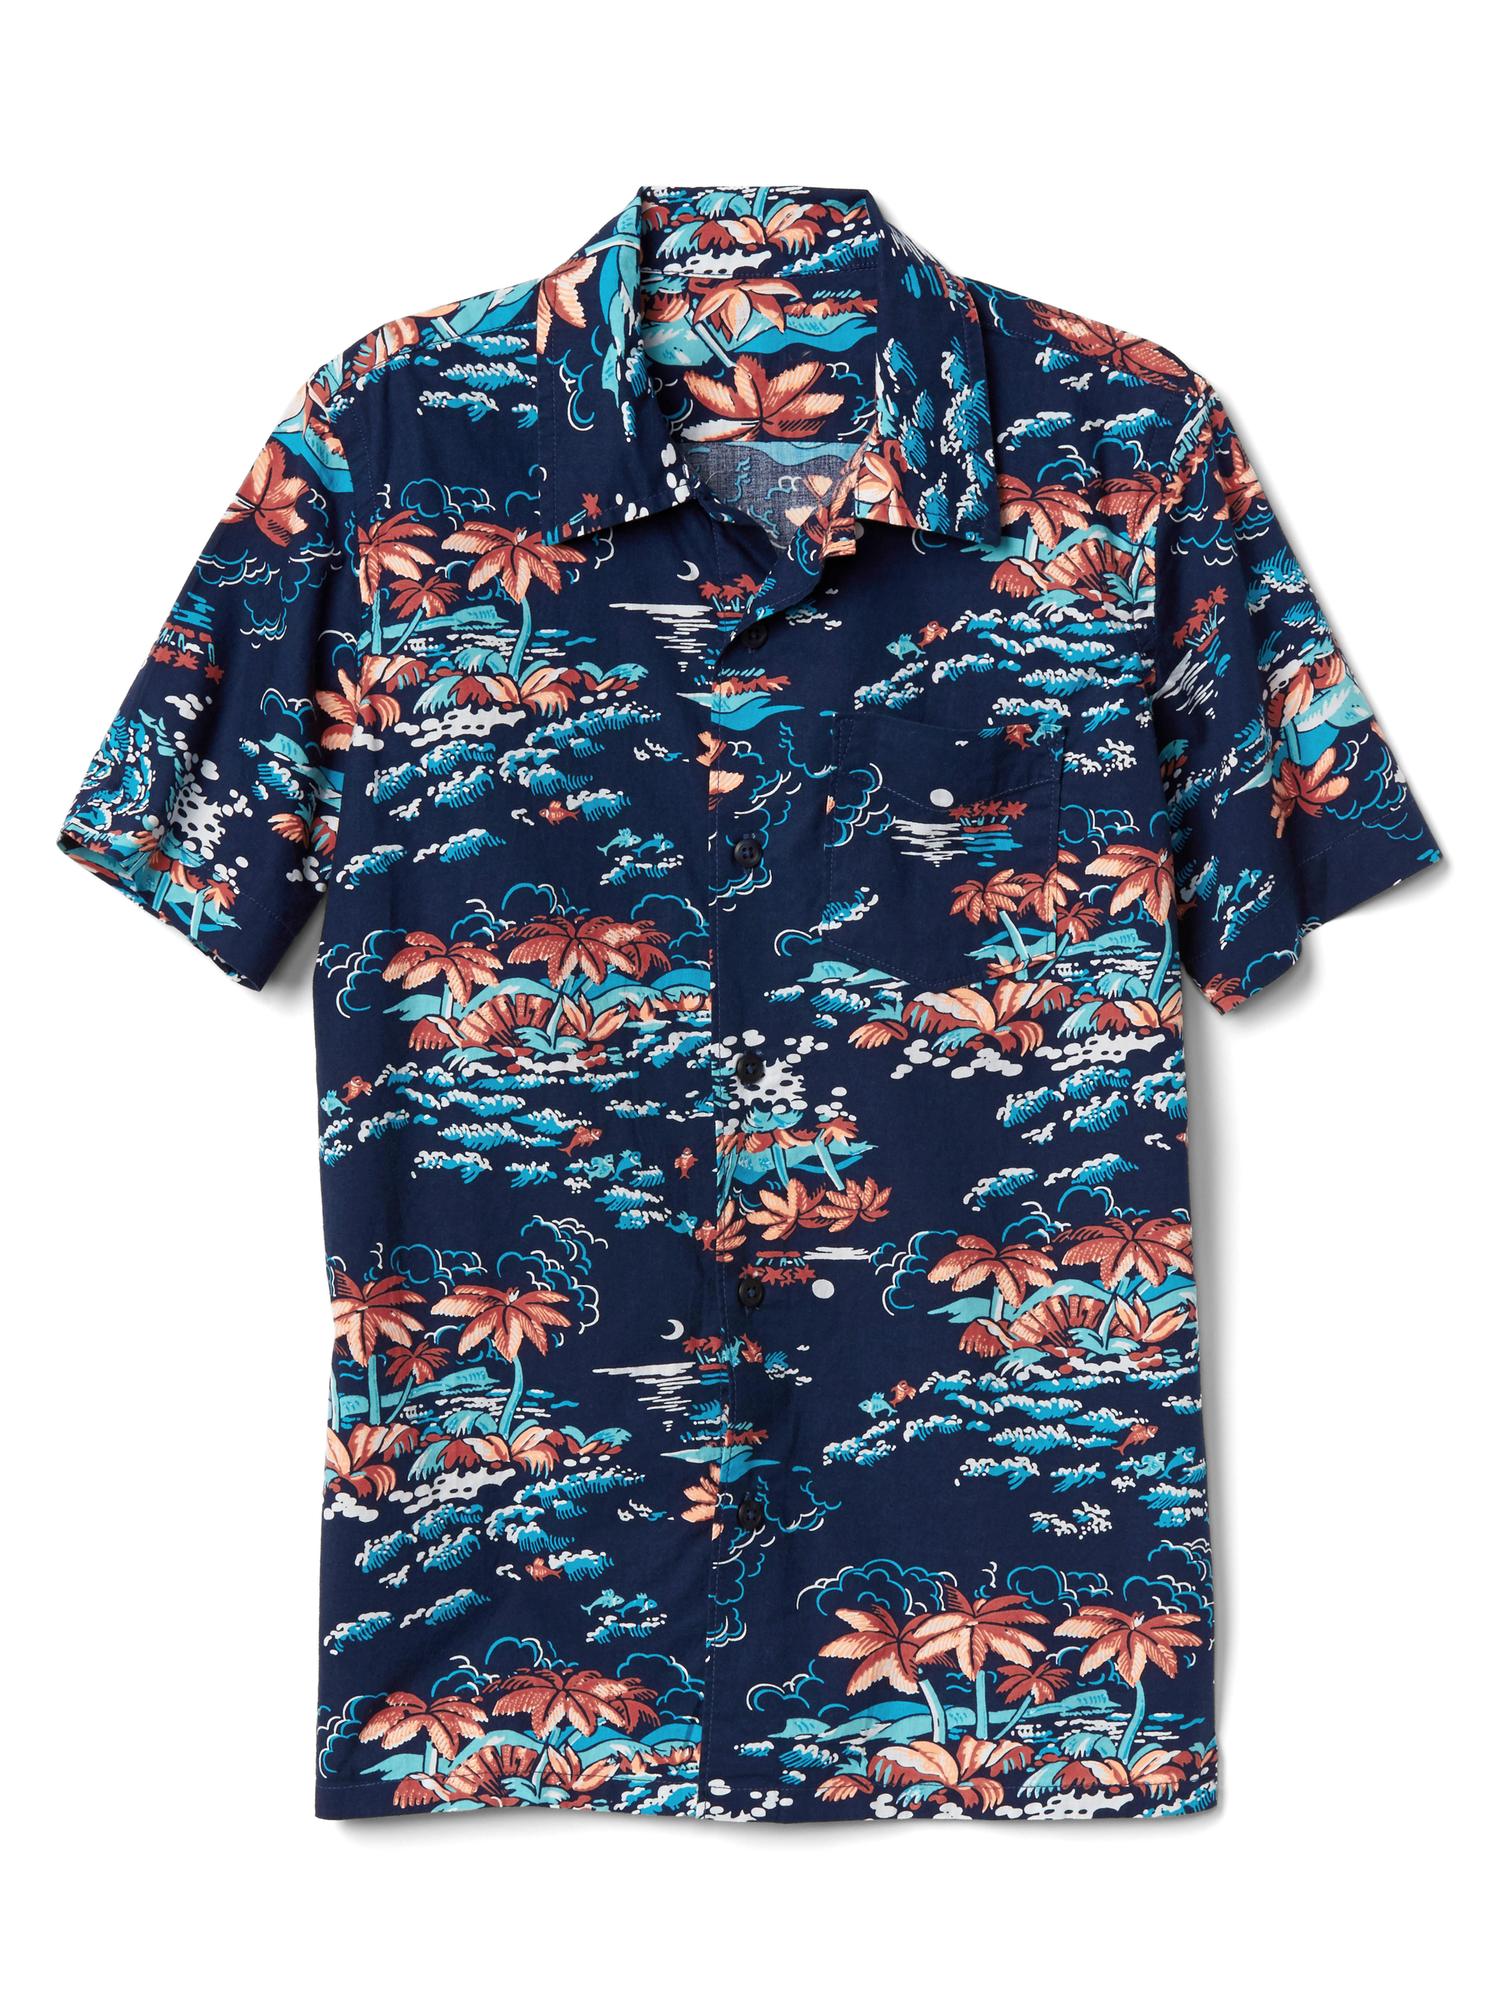 Tropic island short sleeve shirt | Gap